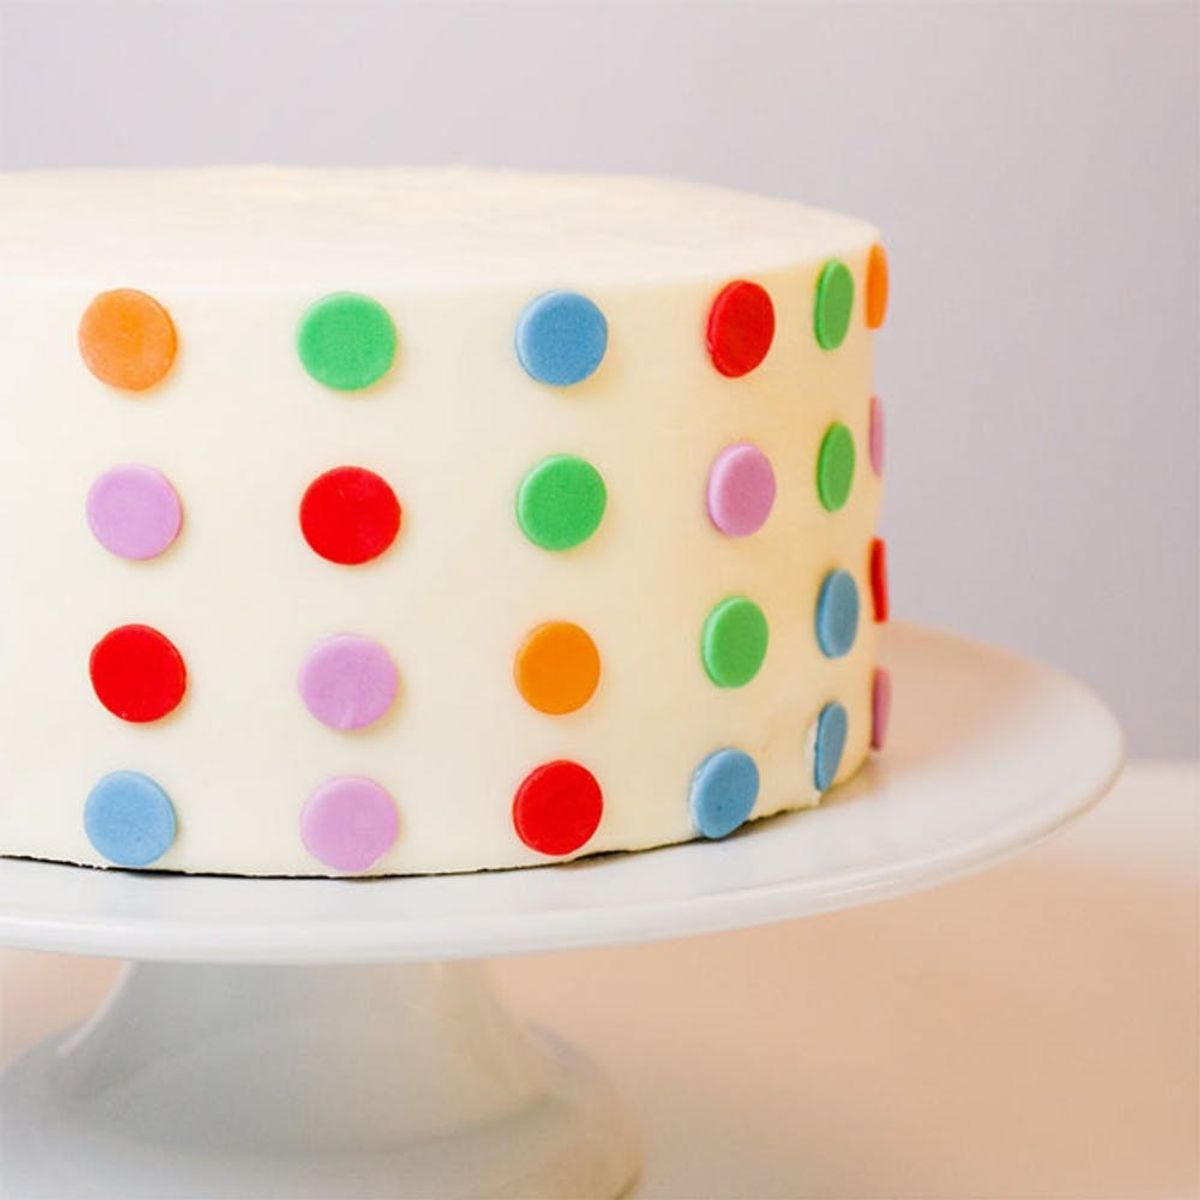 Spotted! 20 Pretty Polka Dot Desserts